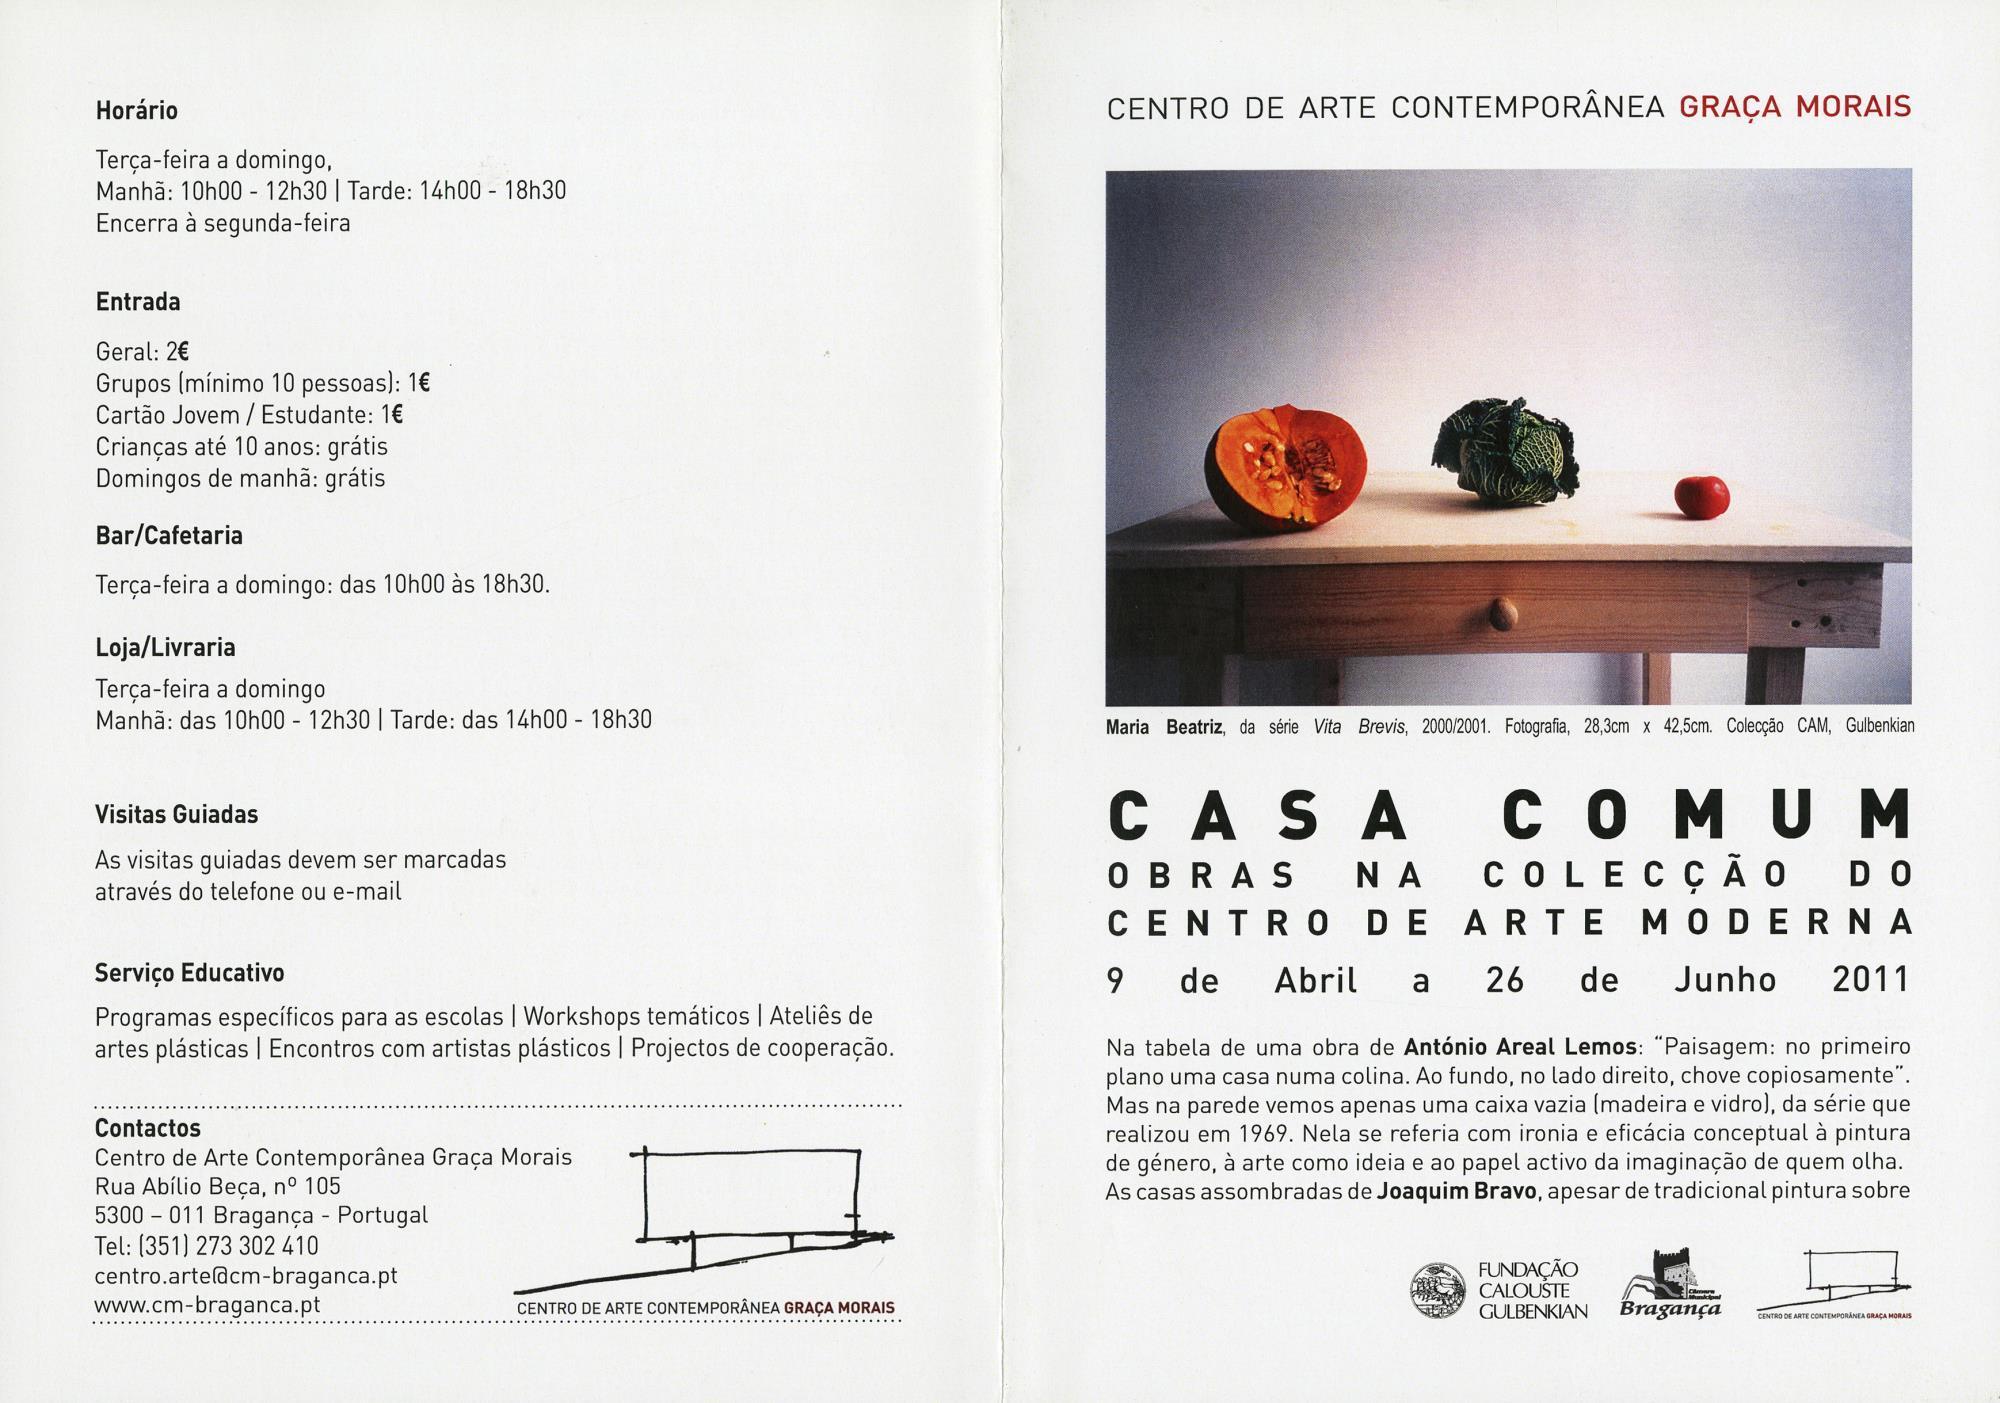 Casa Comum. Obras da Colecção do CAM